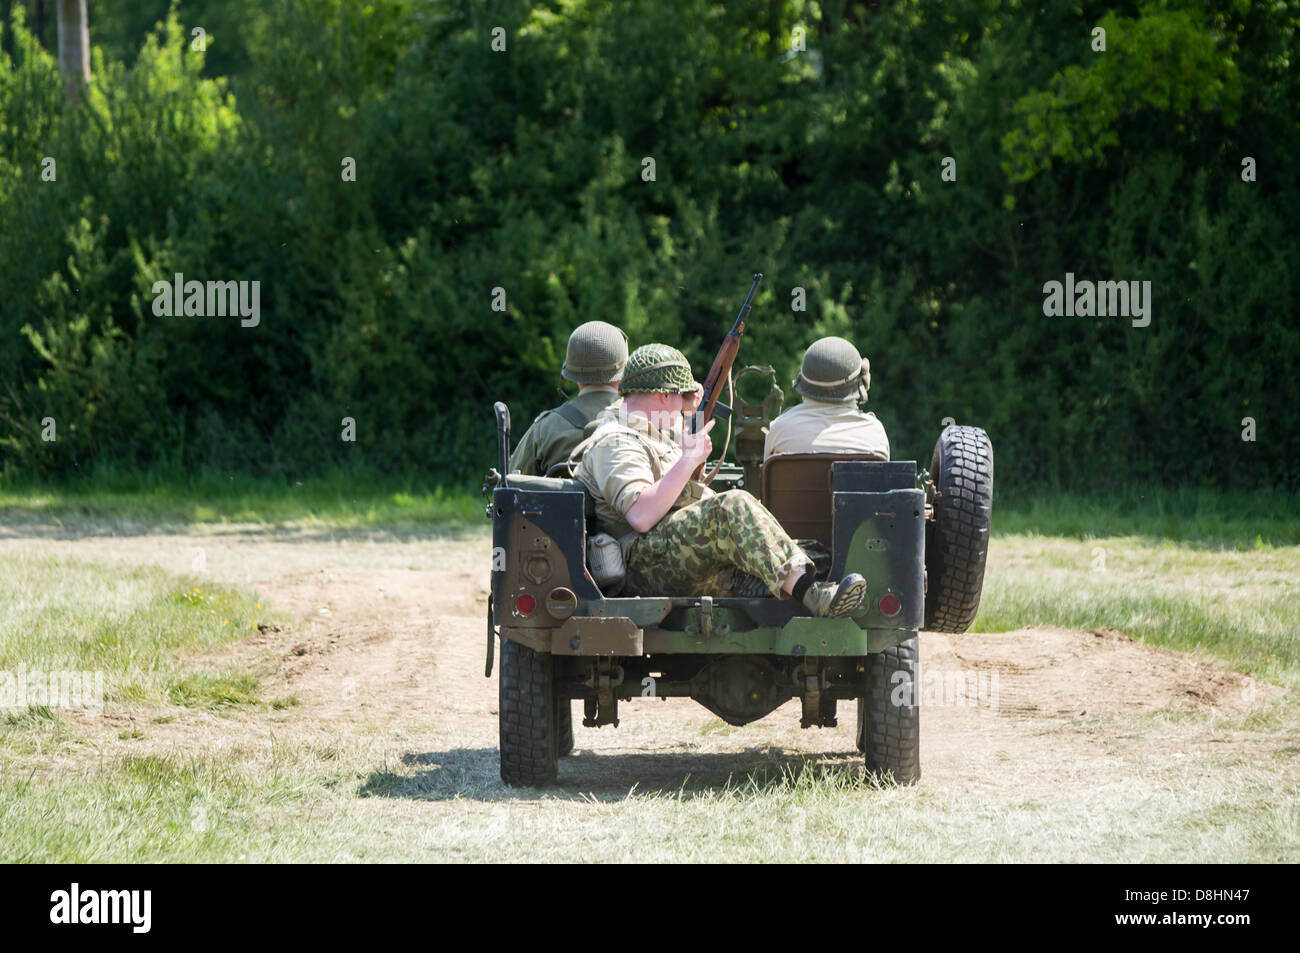 La Seconde Guerre mondiale, 2 soldats américains ont été chassés de l'appareil photo's view point. Overlord, D-Day re-enactment à Denmead, 2013. Banque D'Images